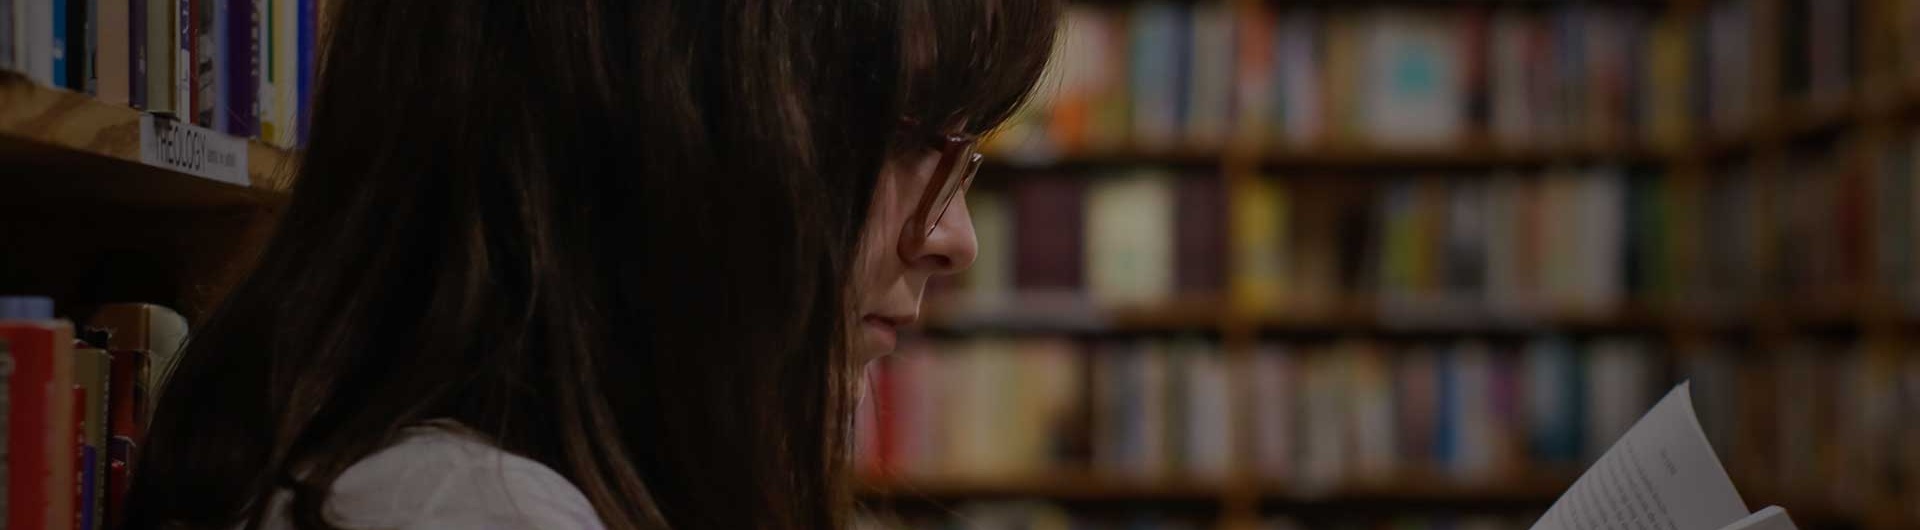 tjej sitter i ett skolbibliotek och läser en bok för att skildra skolundersökning